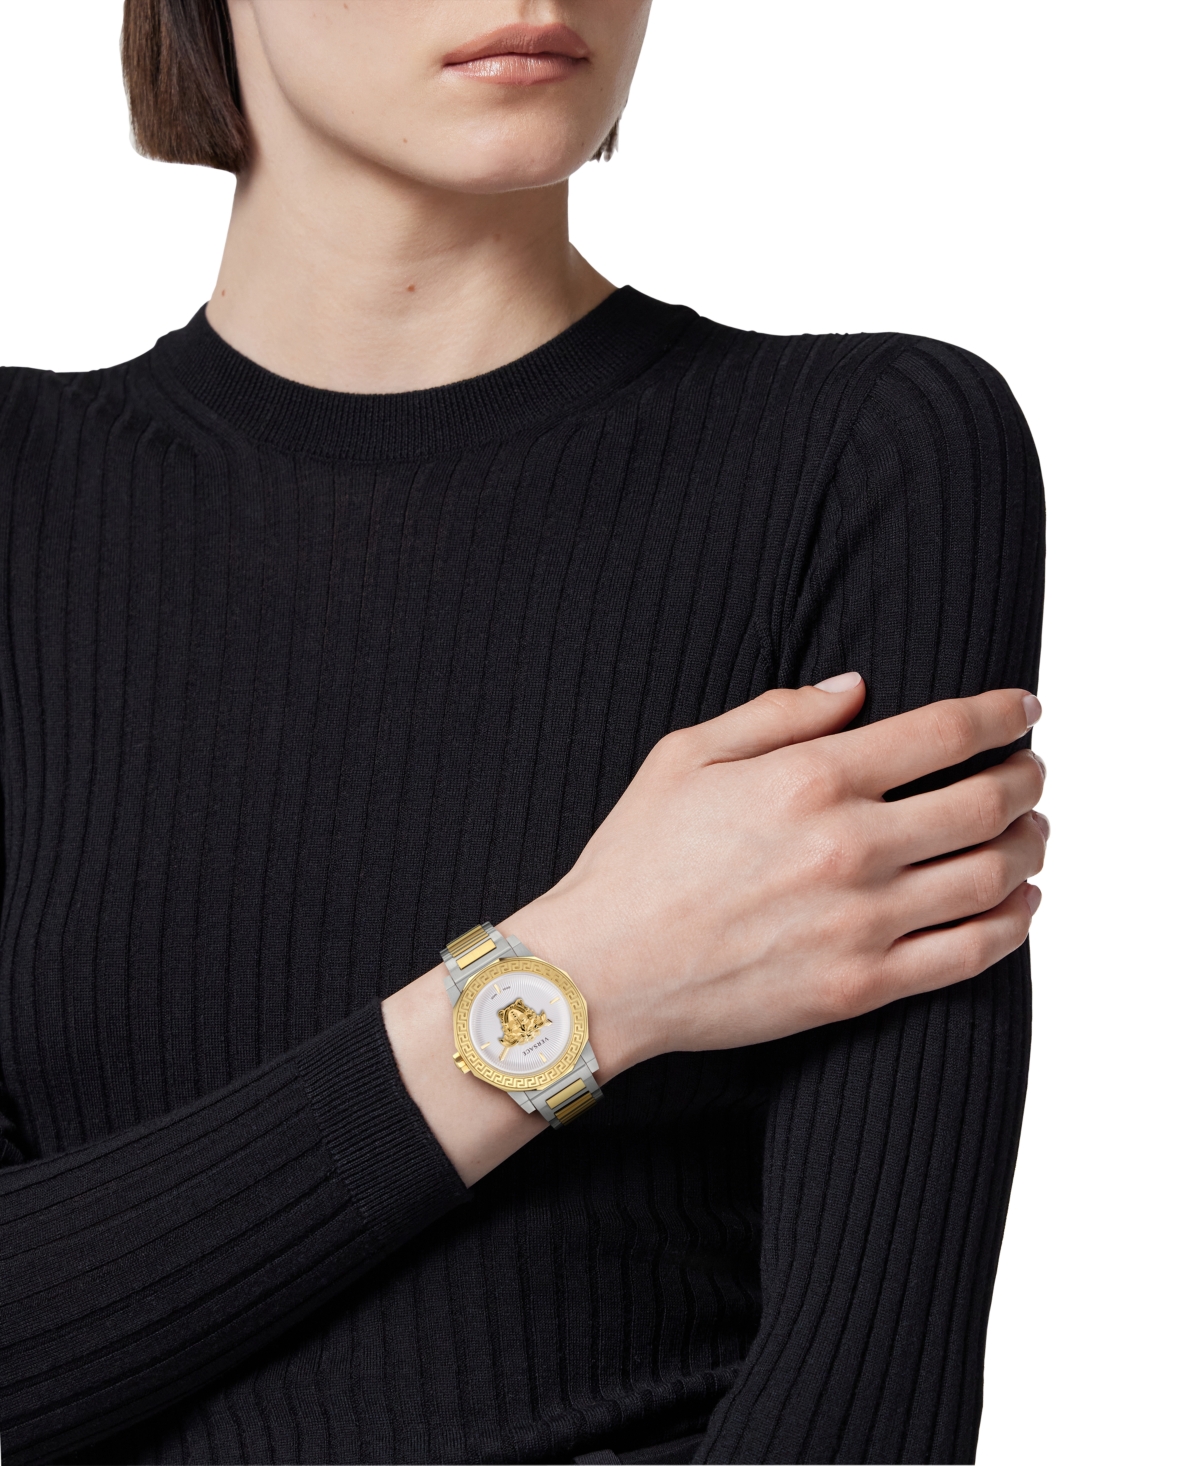 Shop Versace Women's Swiss Medusa Deco Two-tone Stainless Steel Bracelet Watch 38mm In Two Tone